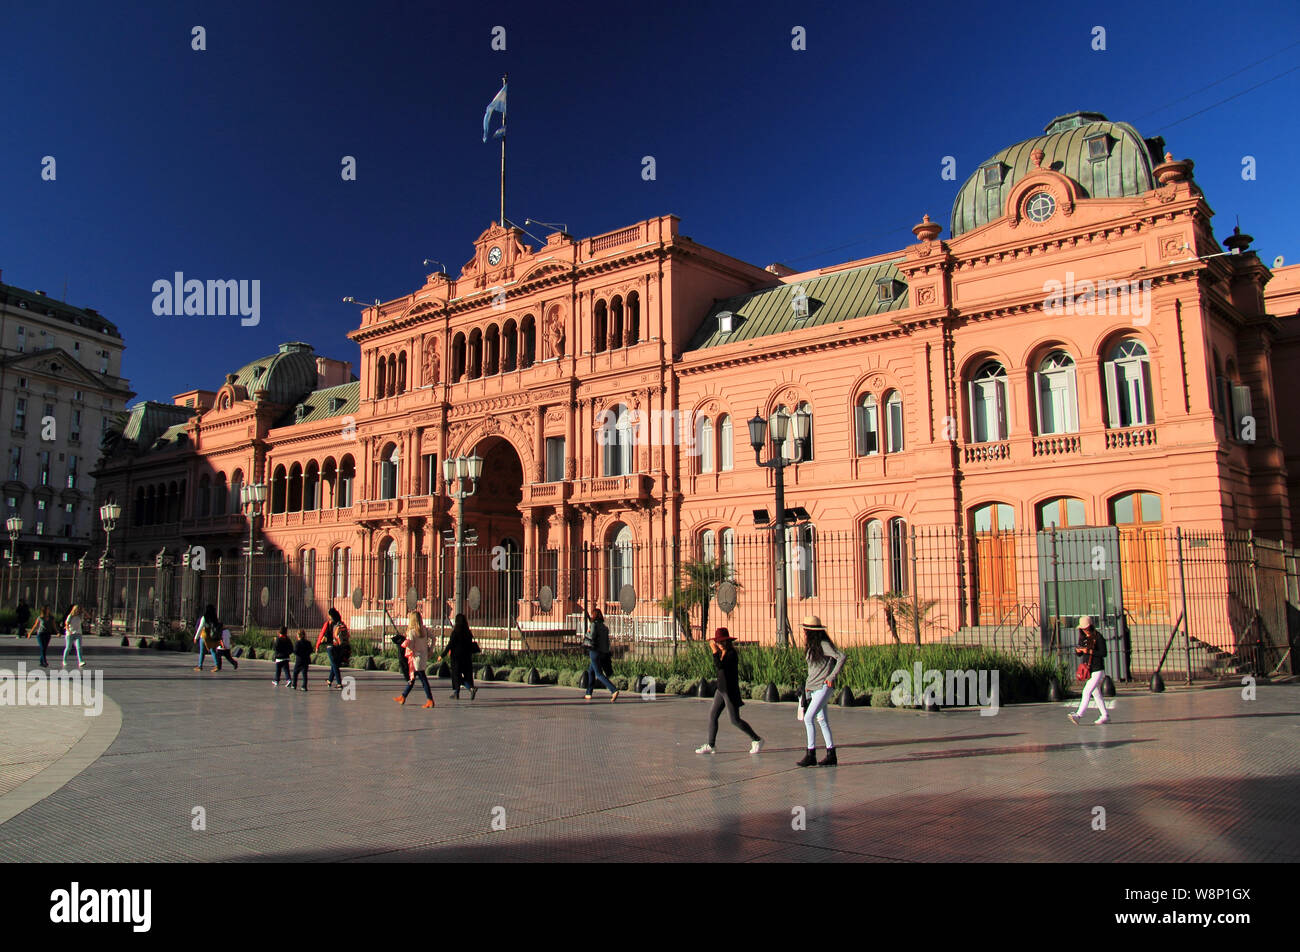 La Casa Rosada, vu ici, est sans doute le plus important monument situé sur l'historique Plaza de Mayo, situé dans la ville de Buenos Aires Banque D'Images